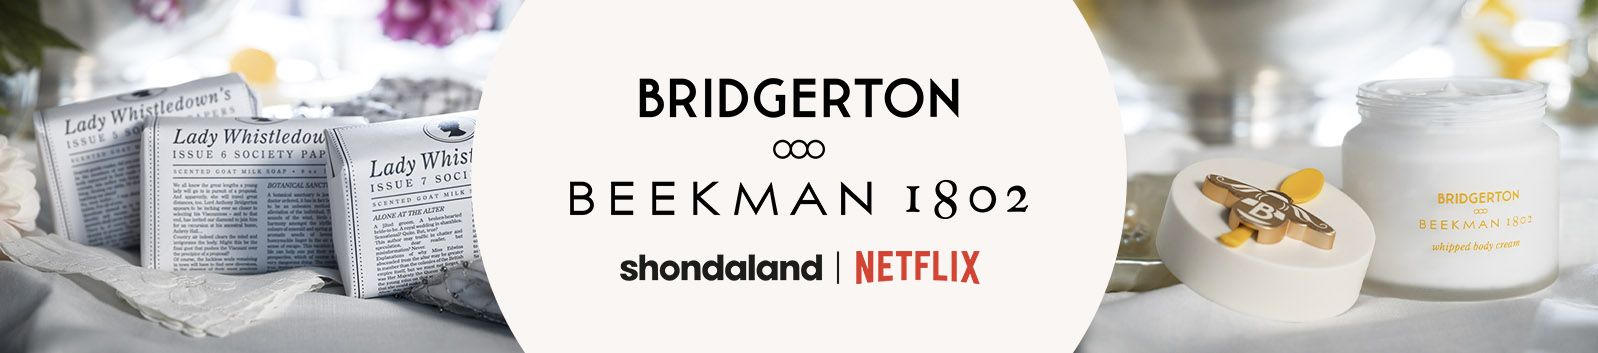 Bridgerton x Beekman 1802 logo, Shondaland logo, Netflix logo